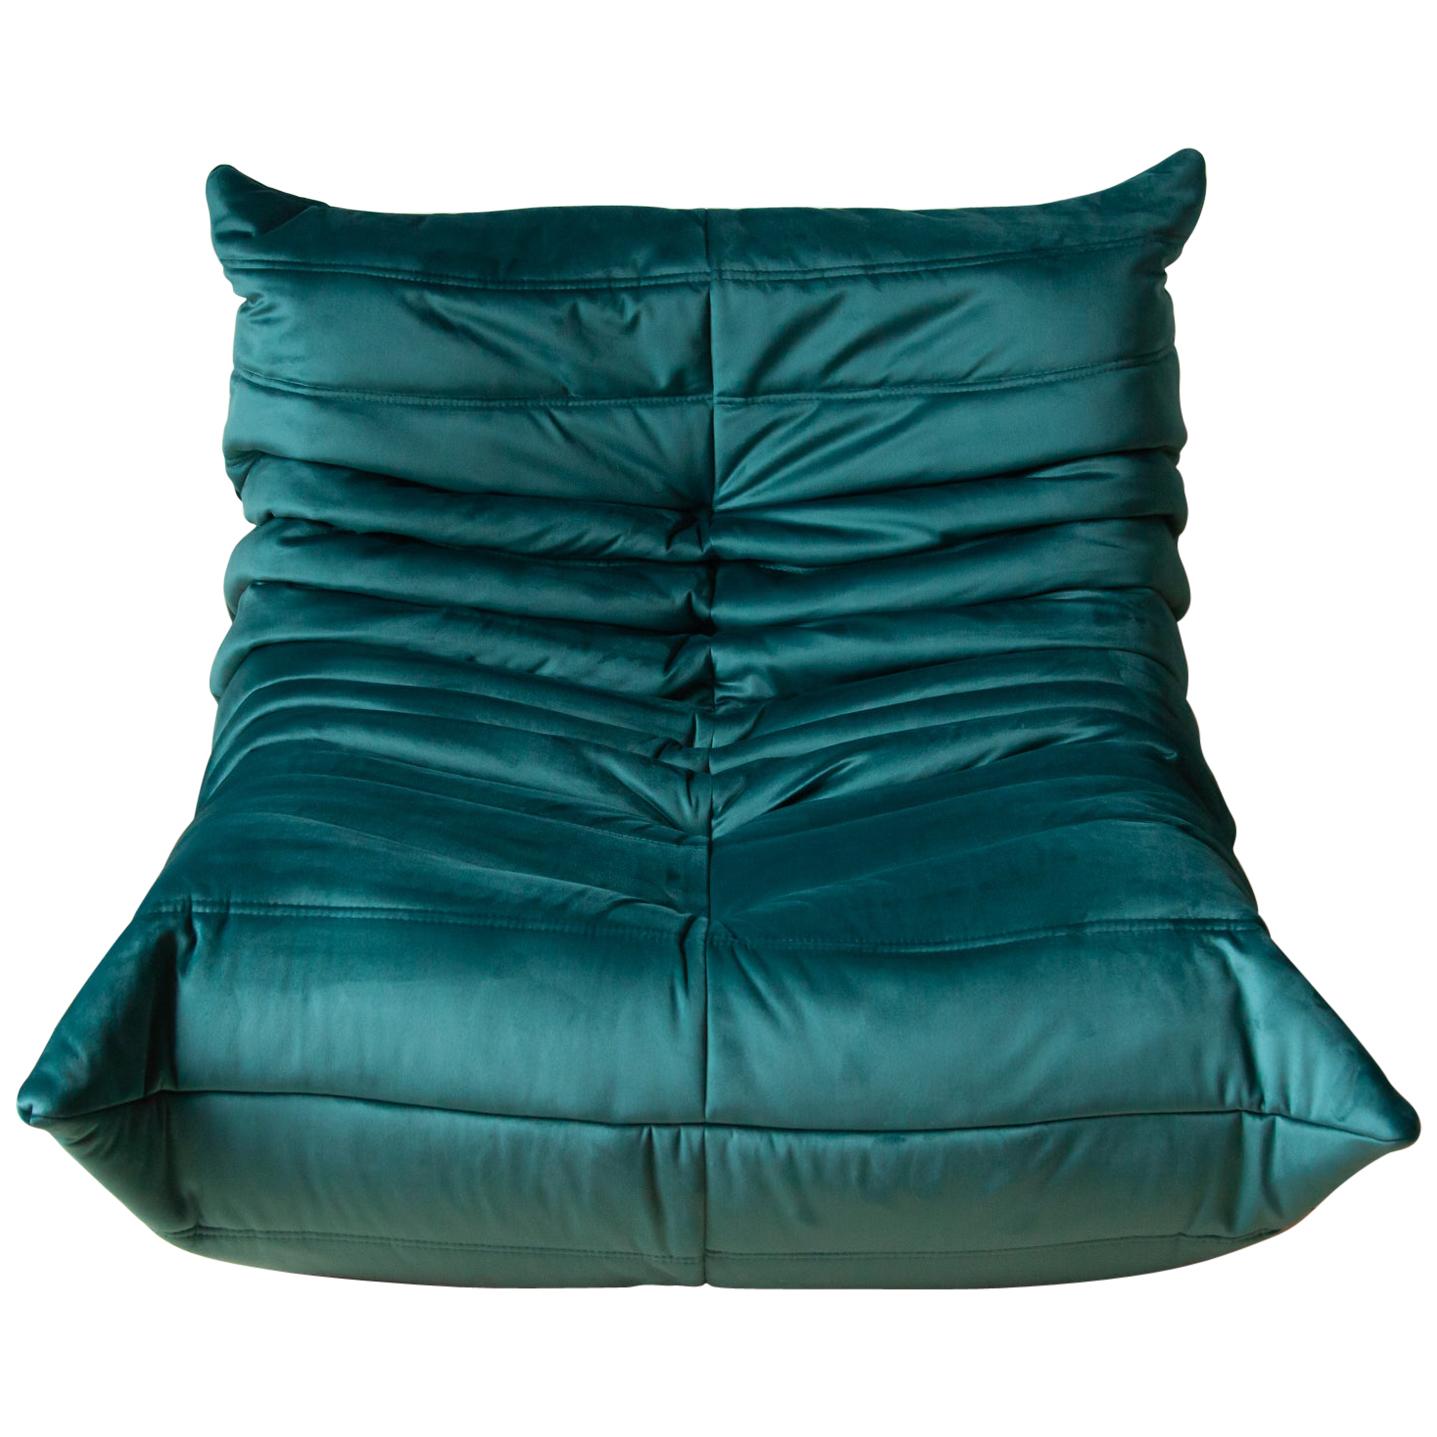 Togo Longue Chair in Blue-Green Velvet by Michel Ducaroy, Ligne Roset For Sale